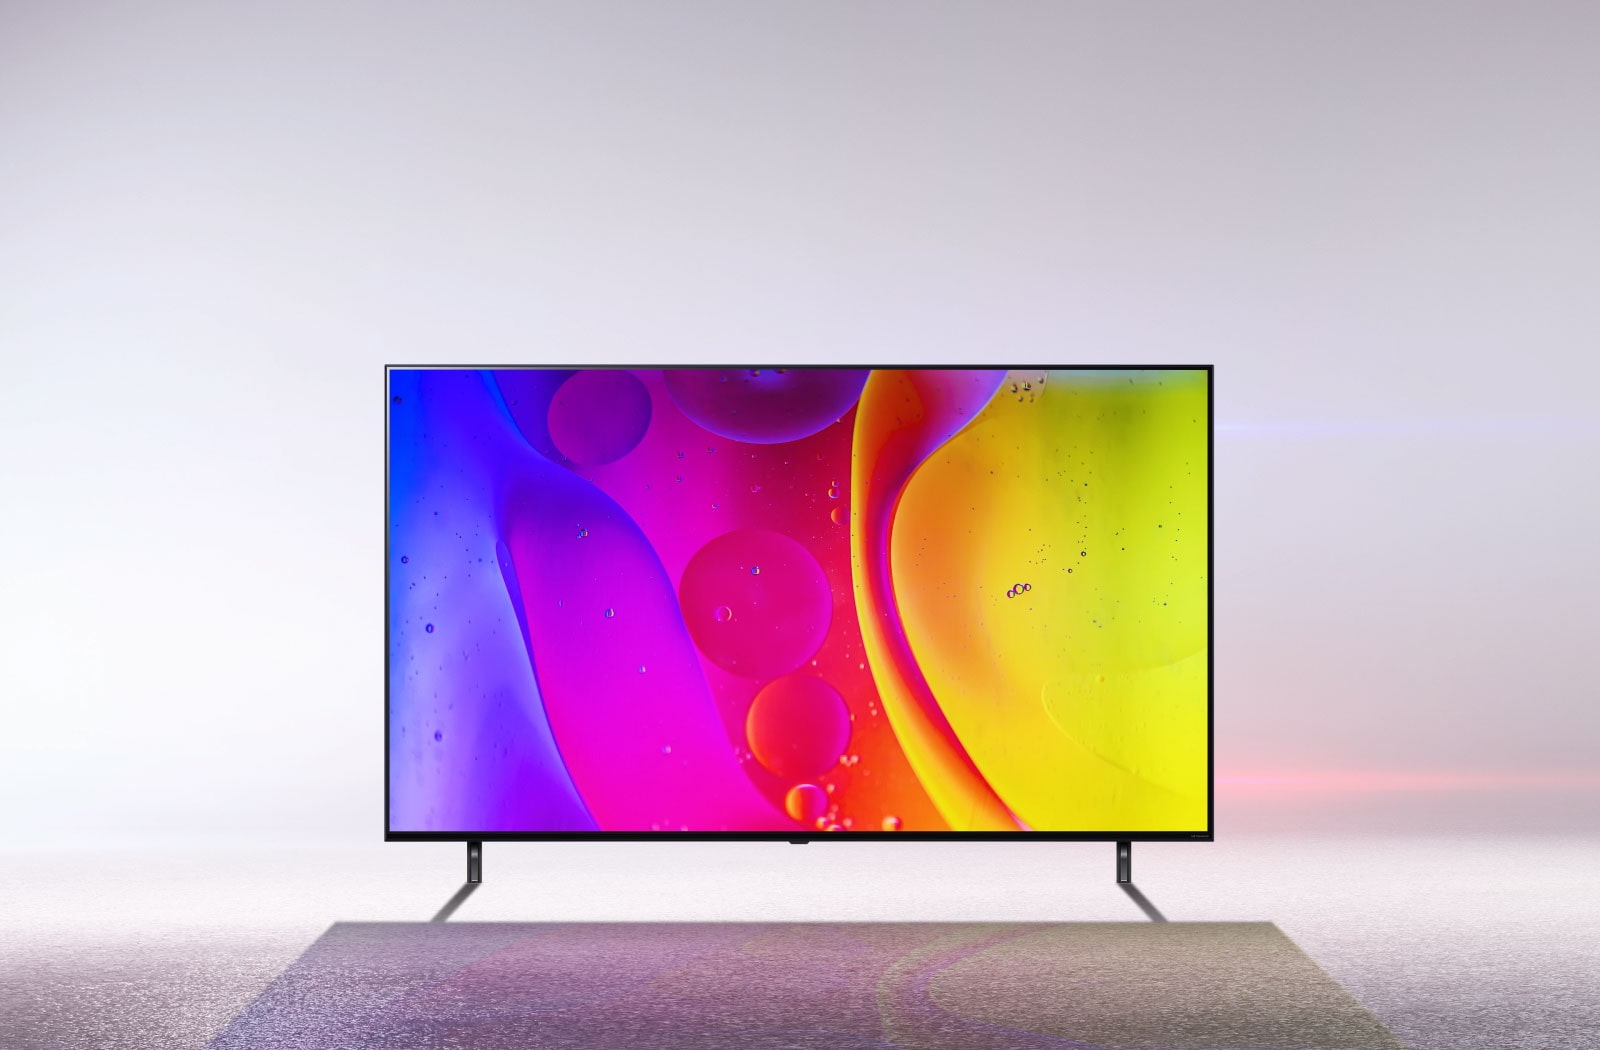 تلفزيون في غرفة بيضاء صارخة يعرض ألوانًا ساطعة ومتحركة تنويمية على الشاشة.